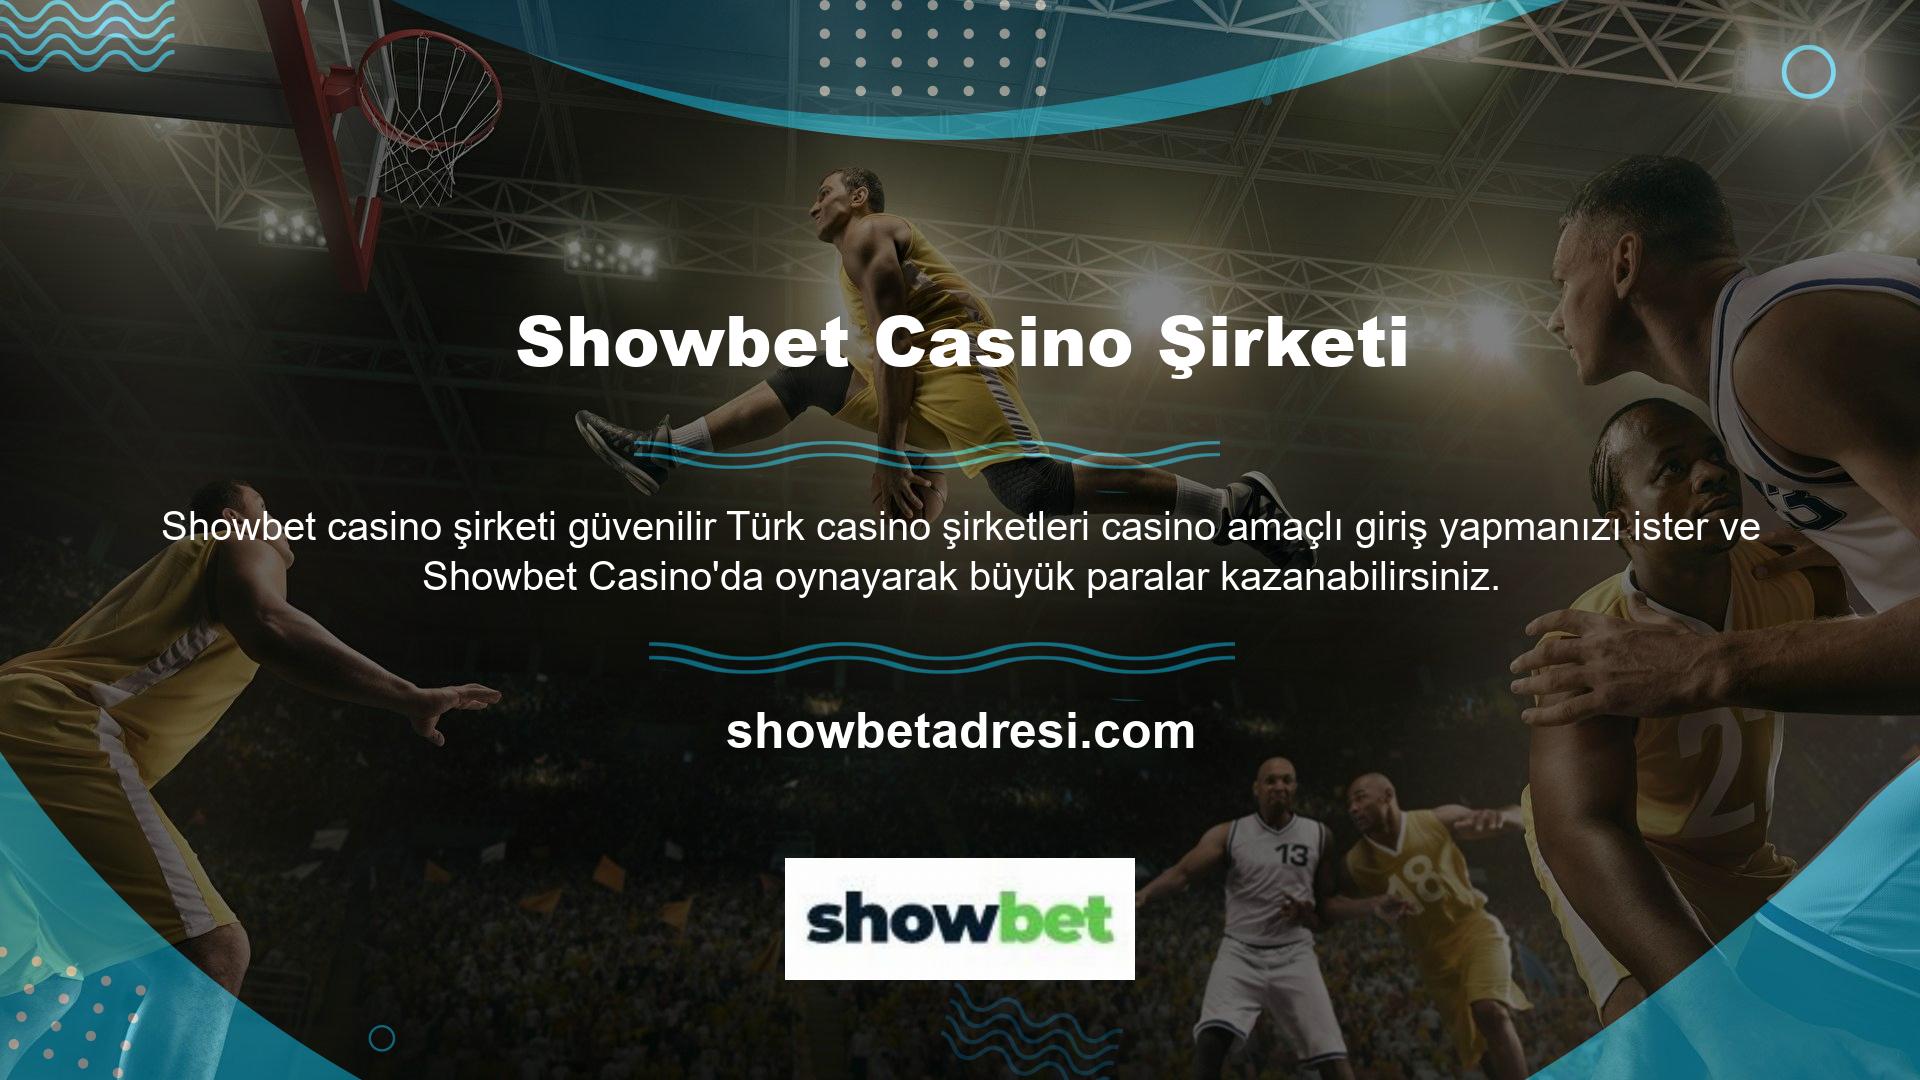 Ancak Showbet, dünyayı şaşırtacak en iyi poker sonuçlarına sahip en iyi bahis şirketidir